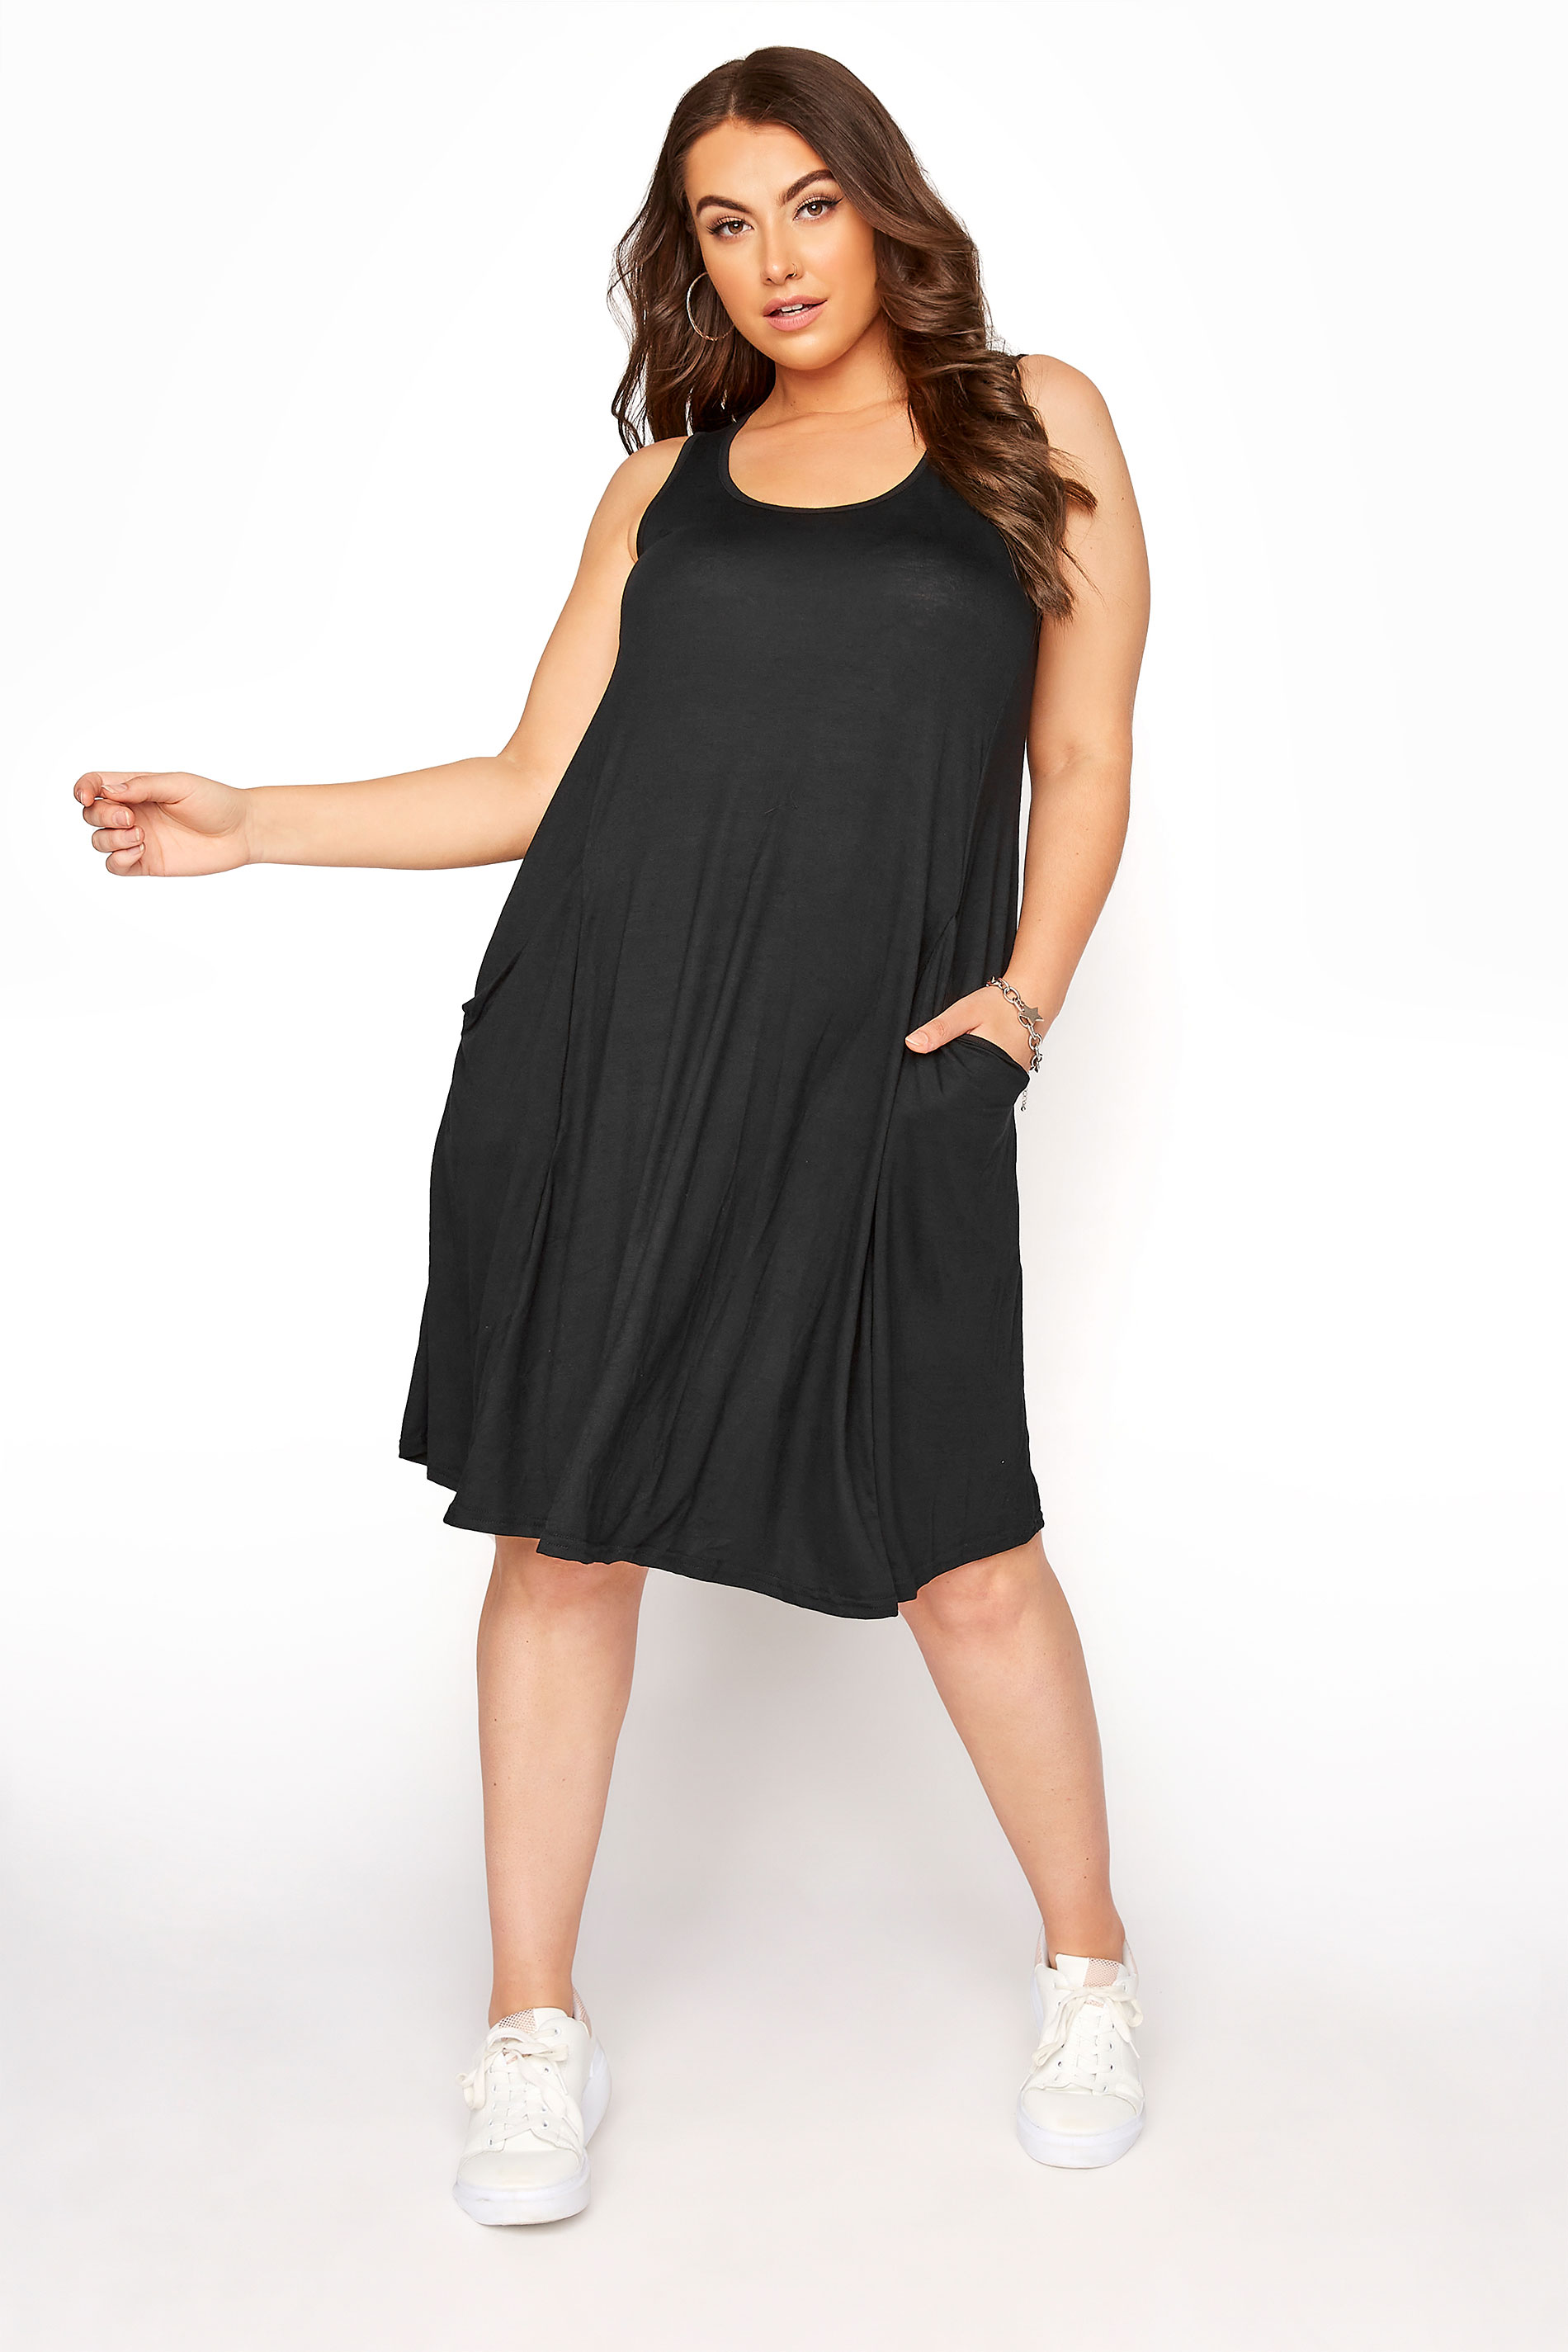 Black Sleeveless Drape Pocket Dress | Yours Clothing